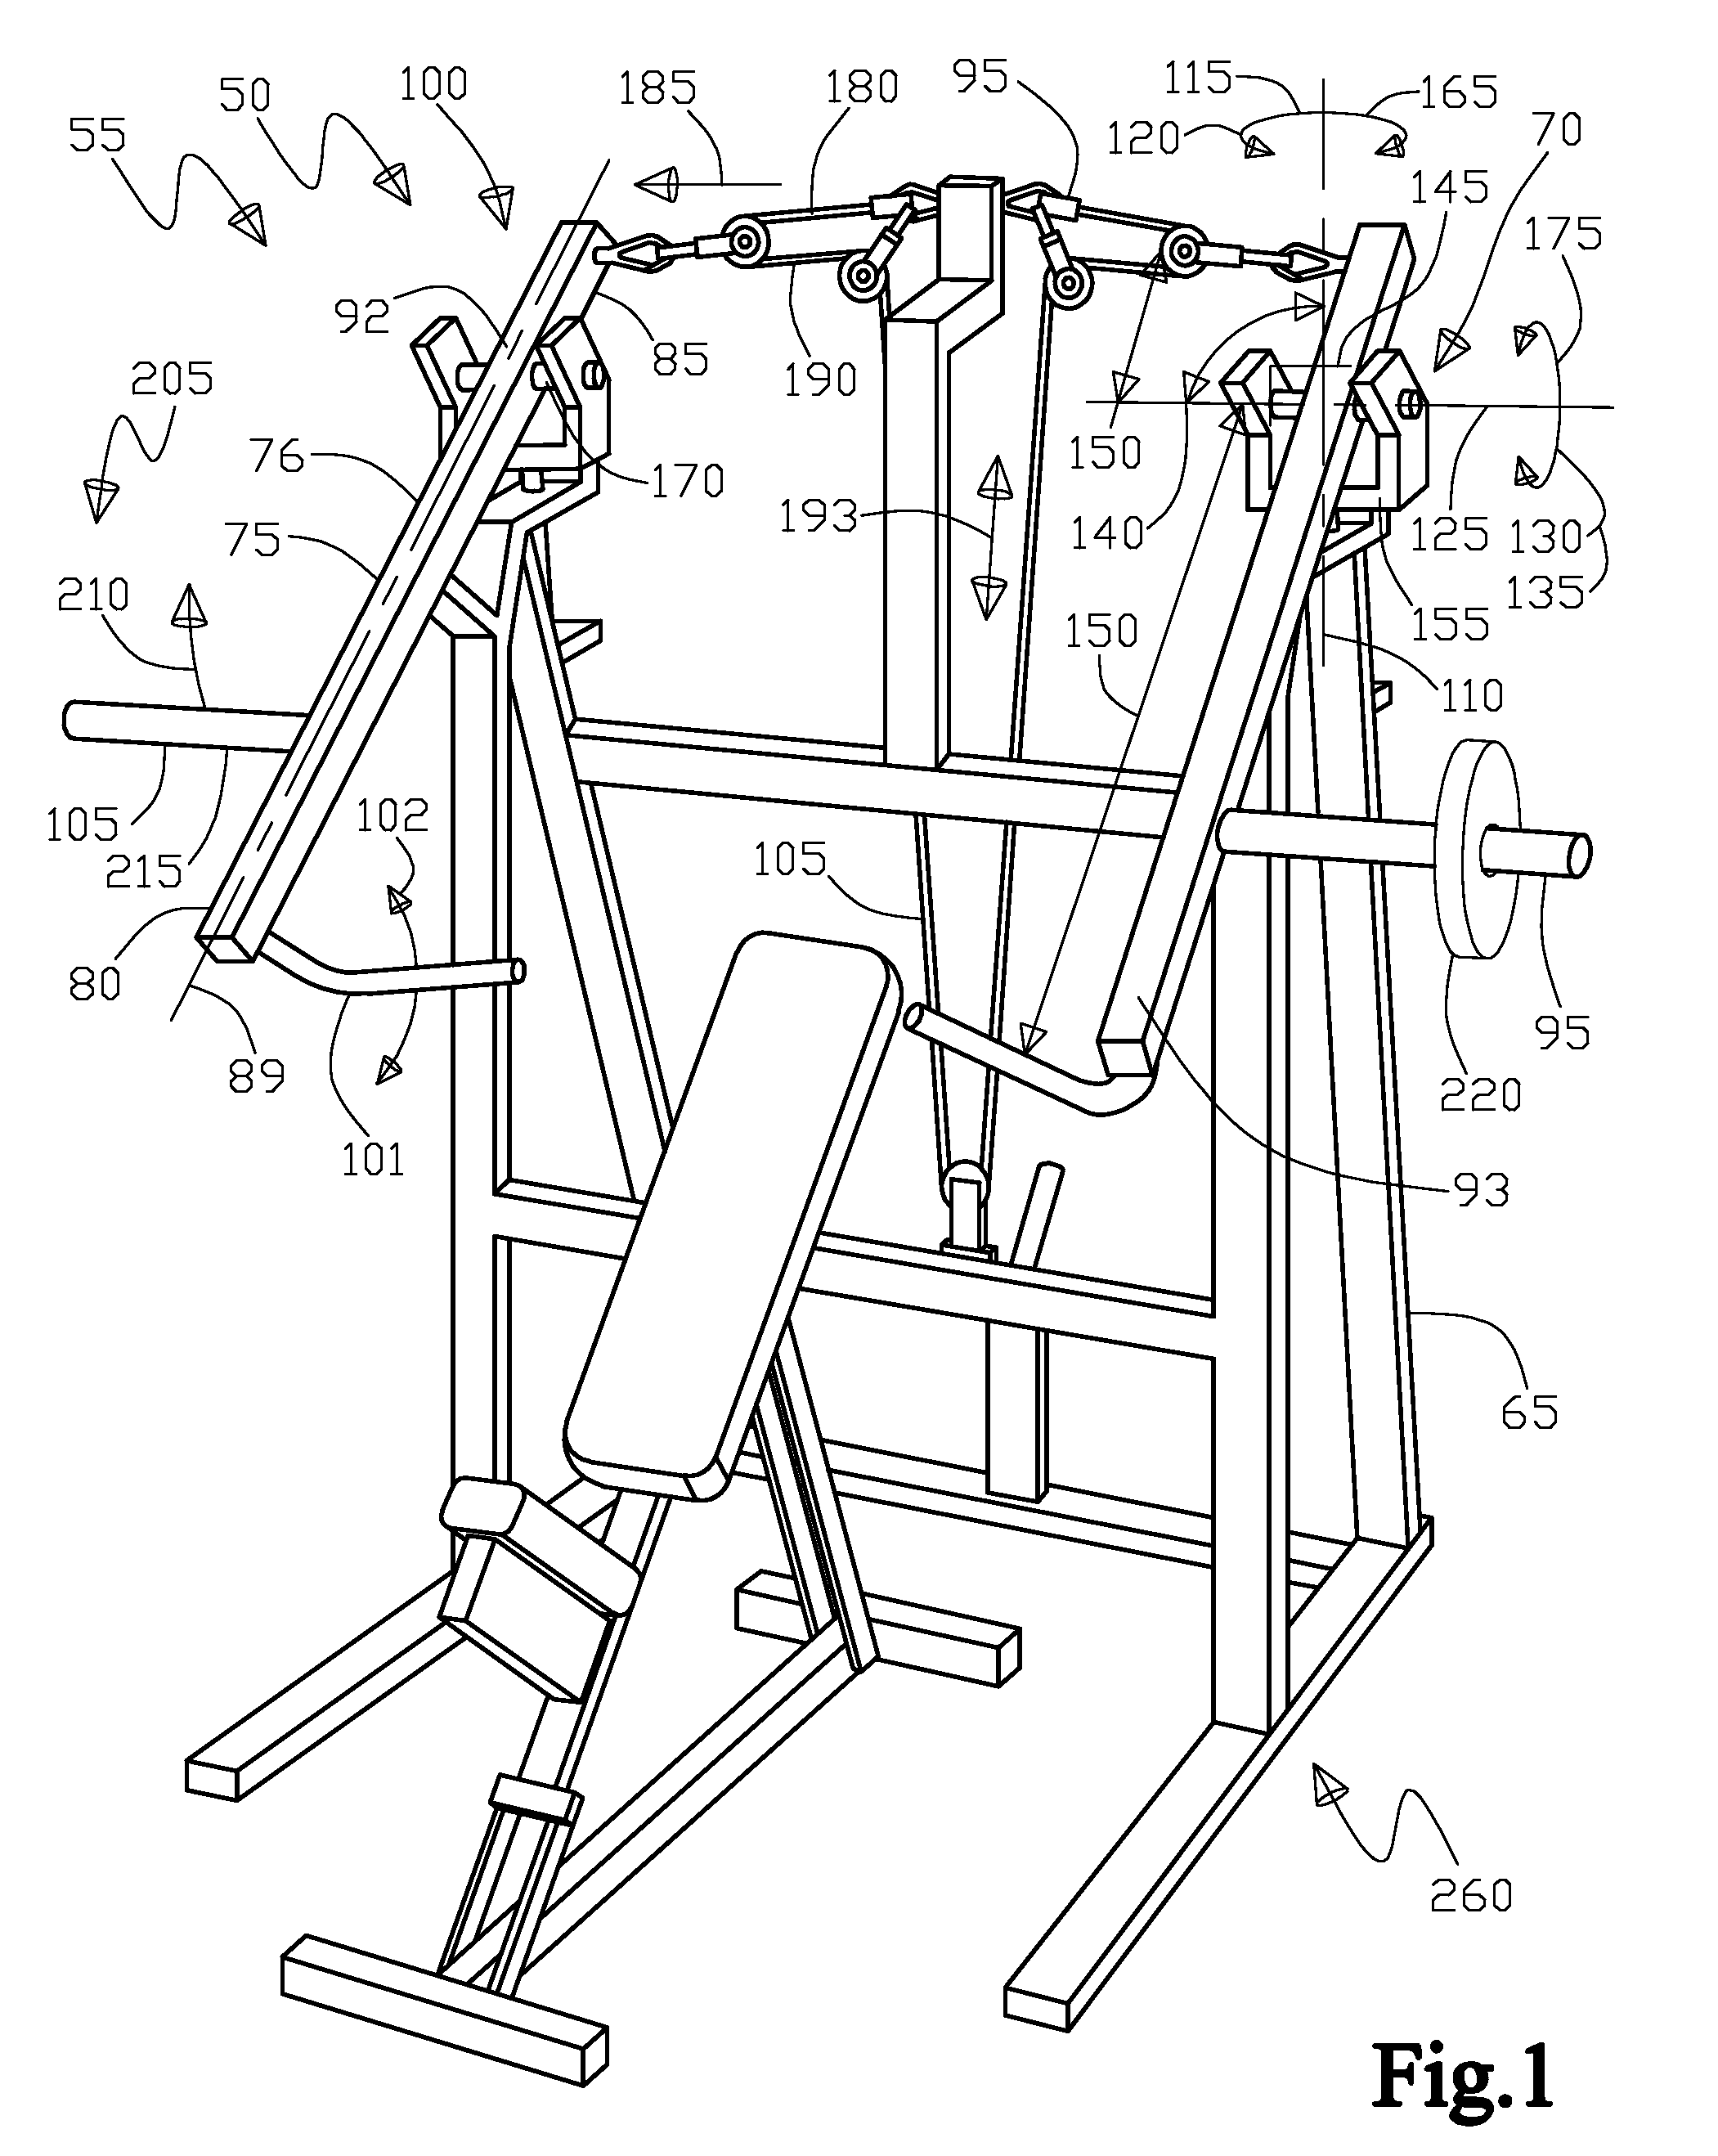 Multi axes exercise apparatus